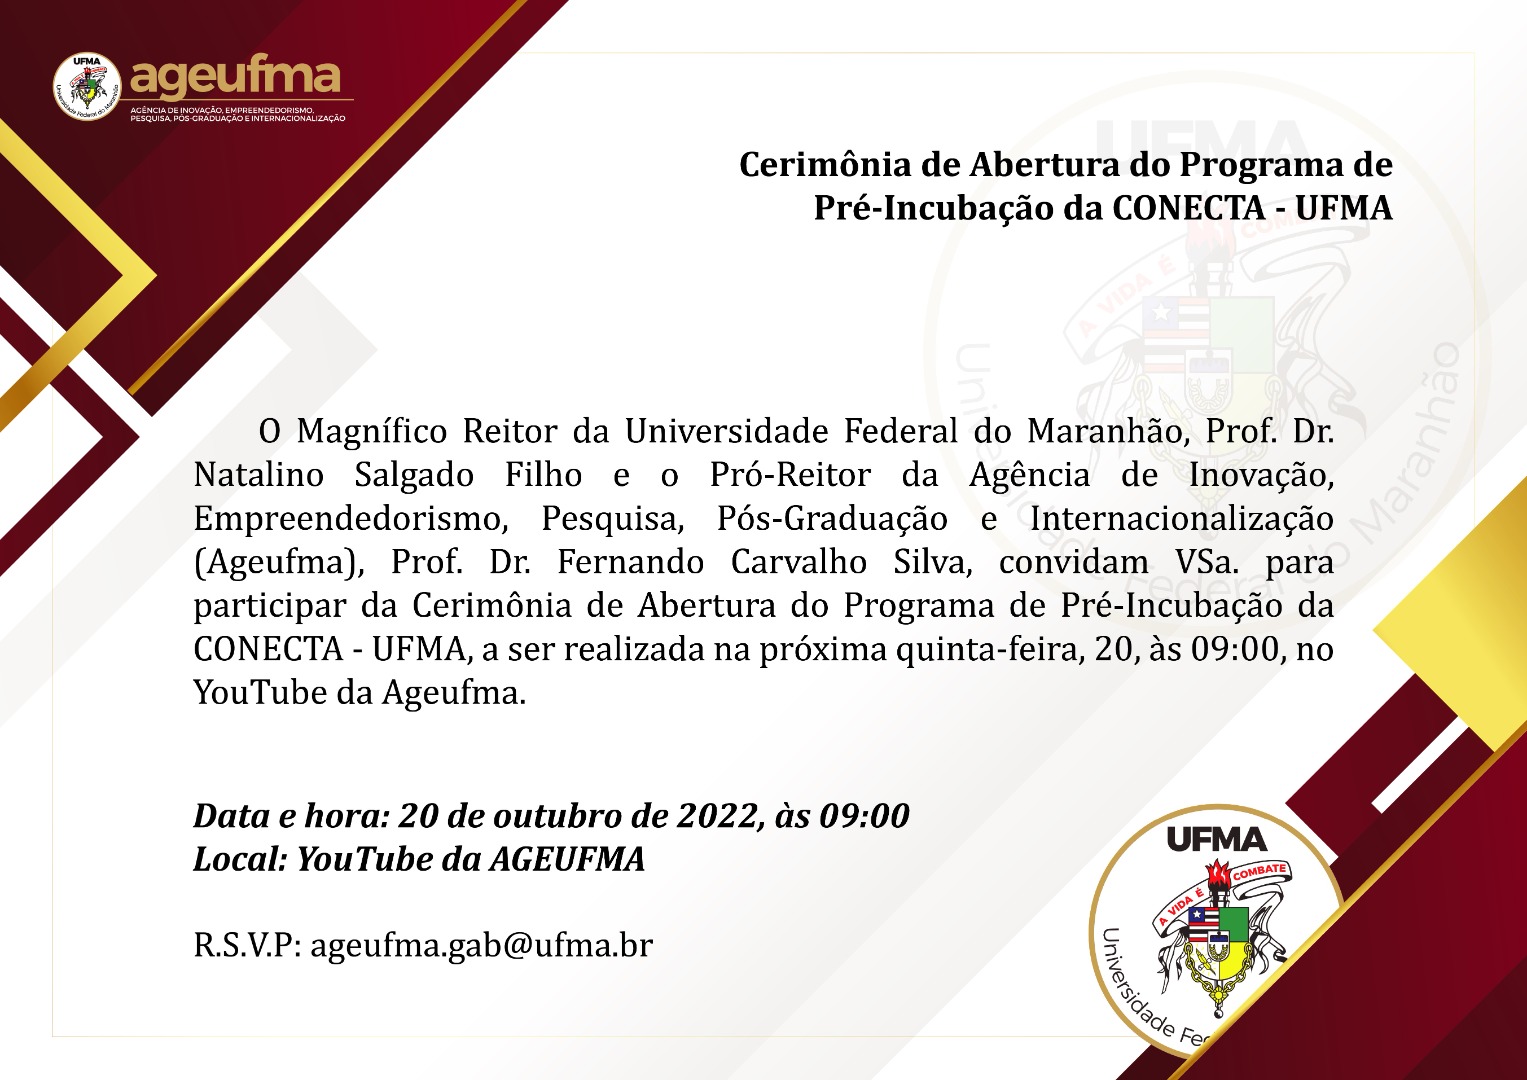 Convite Comunidade Acadêmica UFMA - Programa de Incubação da Conecta (Ageufma).jpg